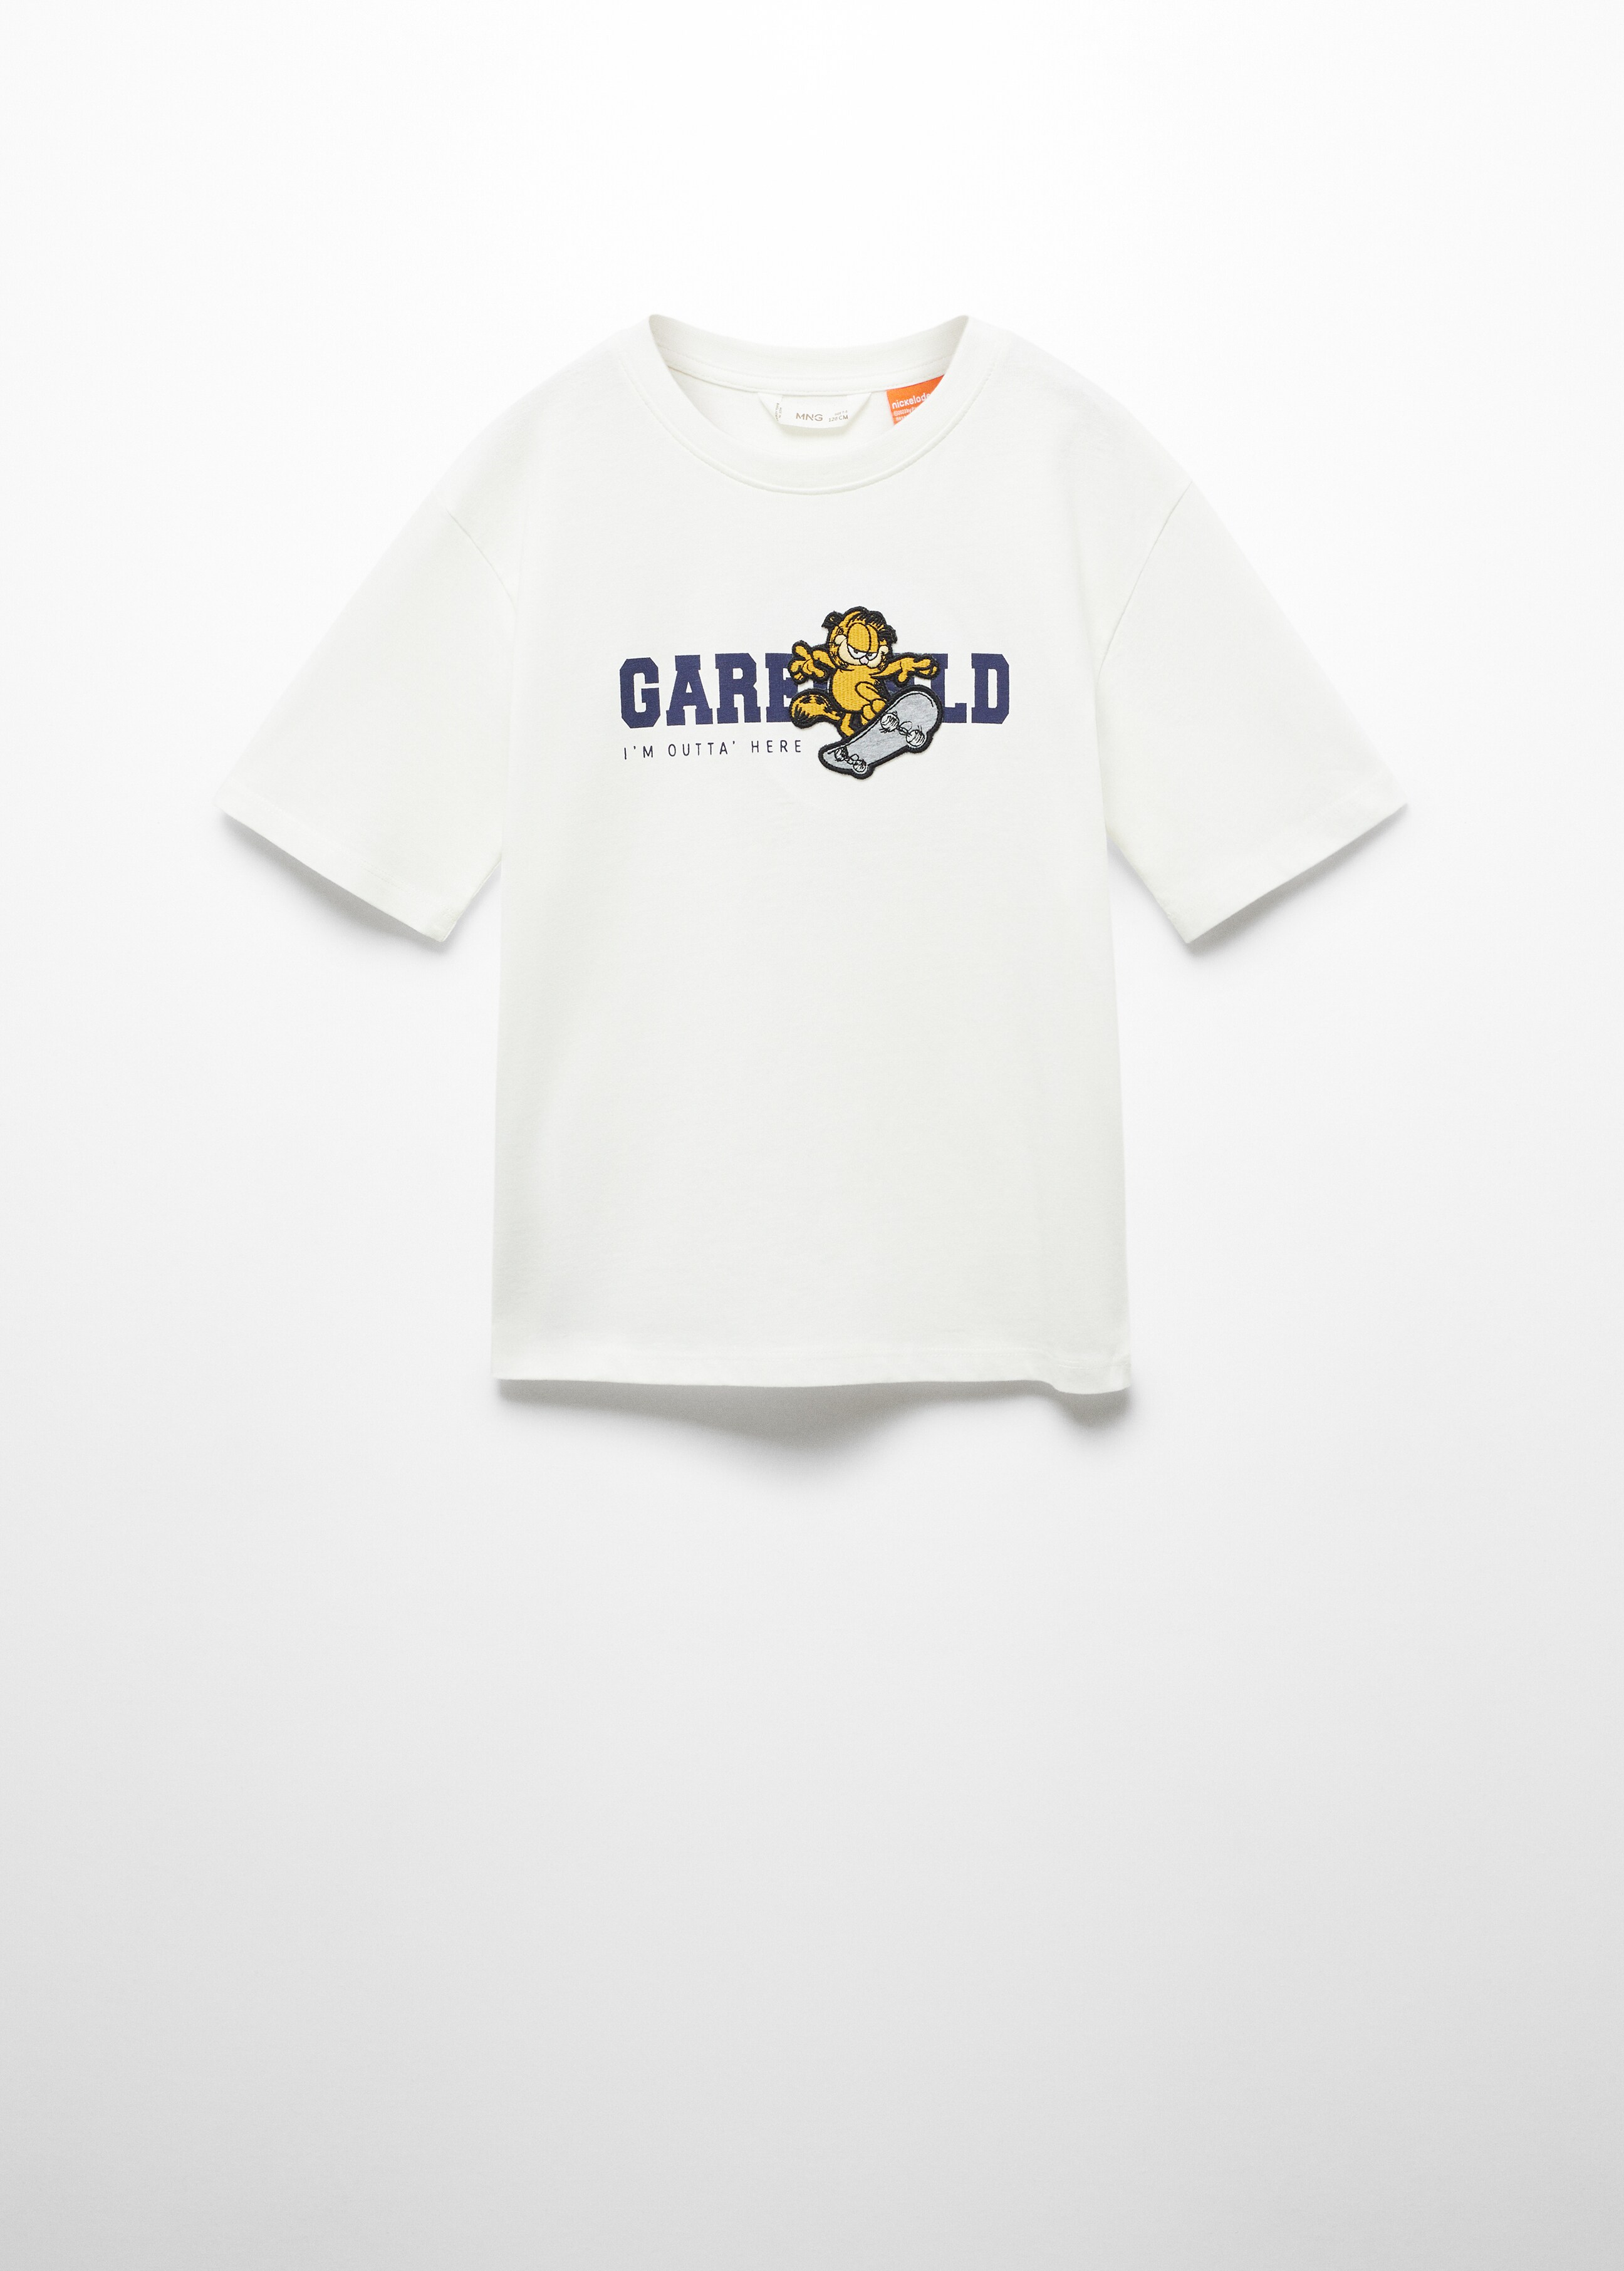 Camiseta algodón Garfield - Artículo sin modelo